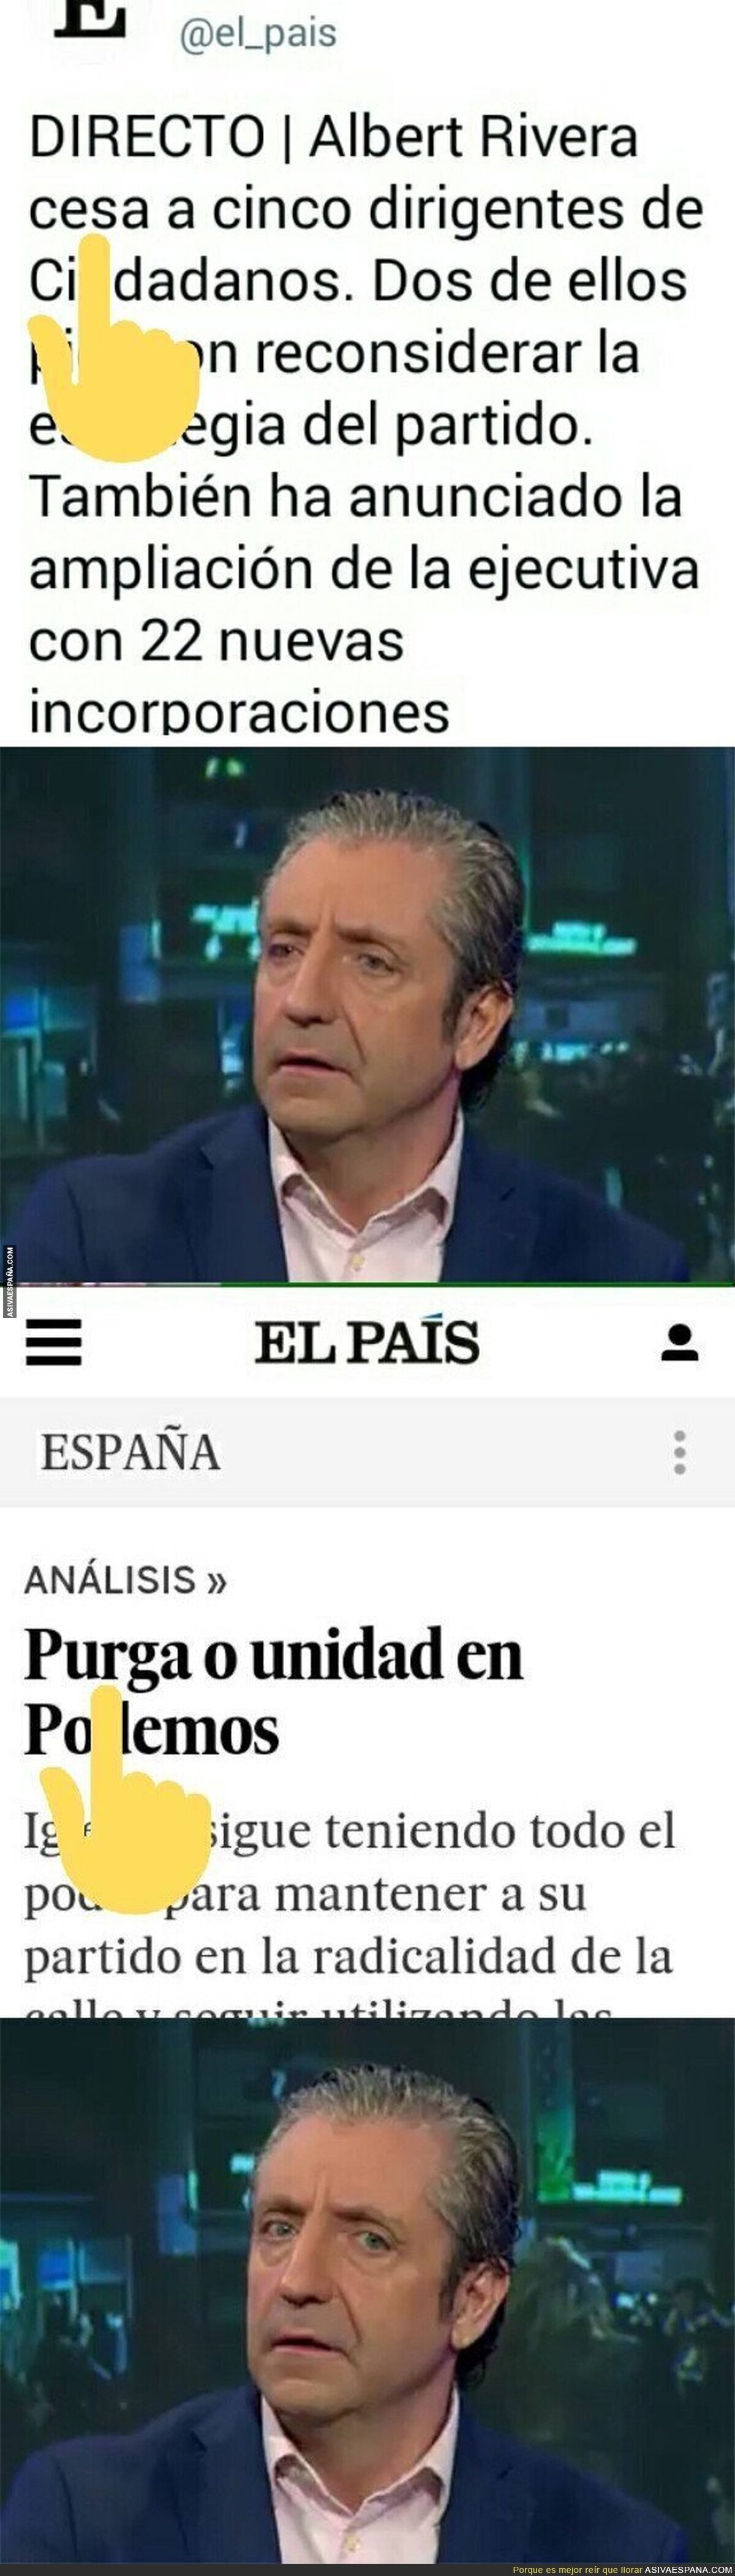 El doble rasero de 'El País' a la hora de hablar de cesados en un partido depende de la ideología